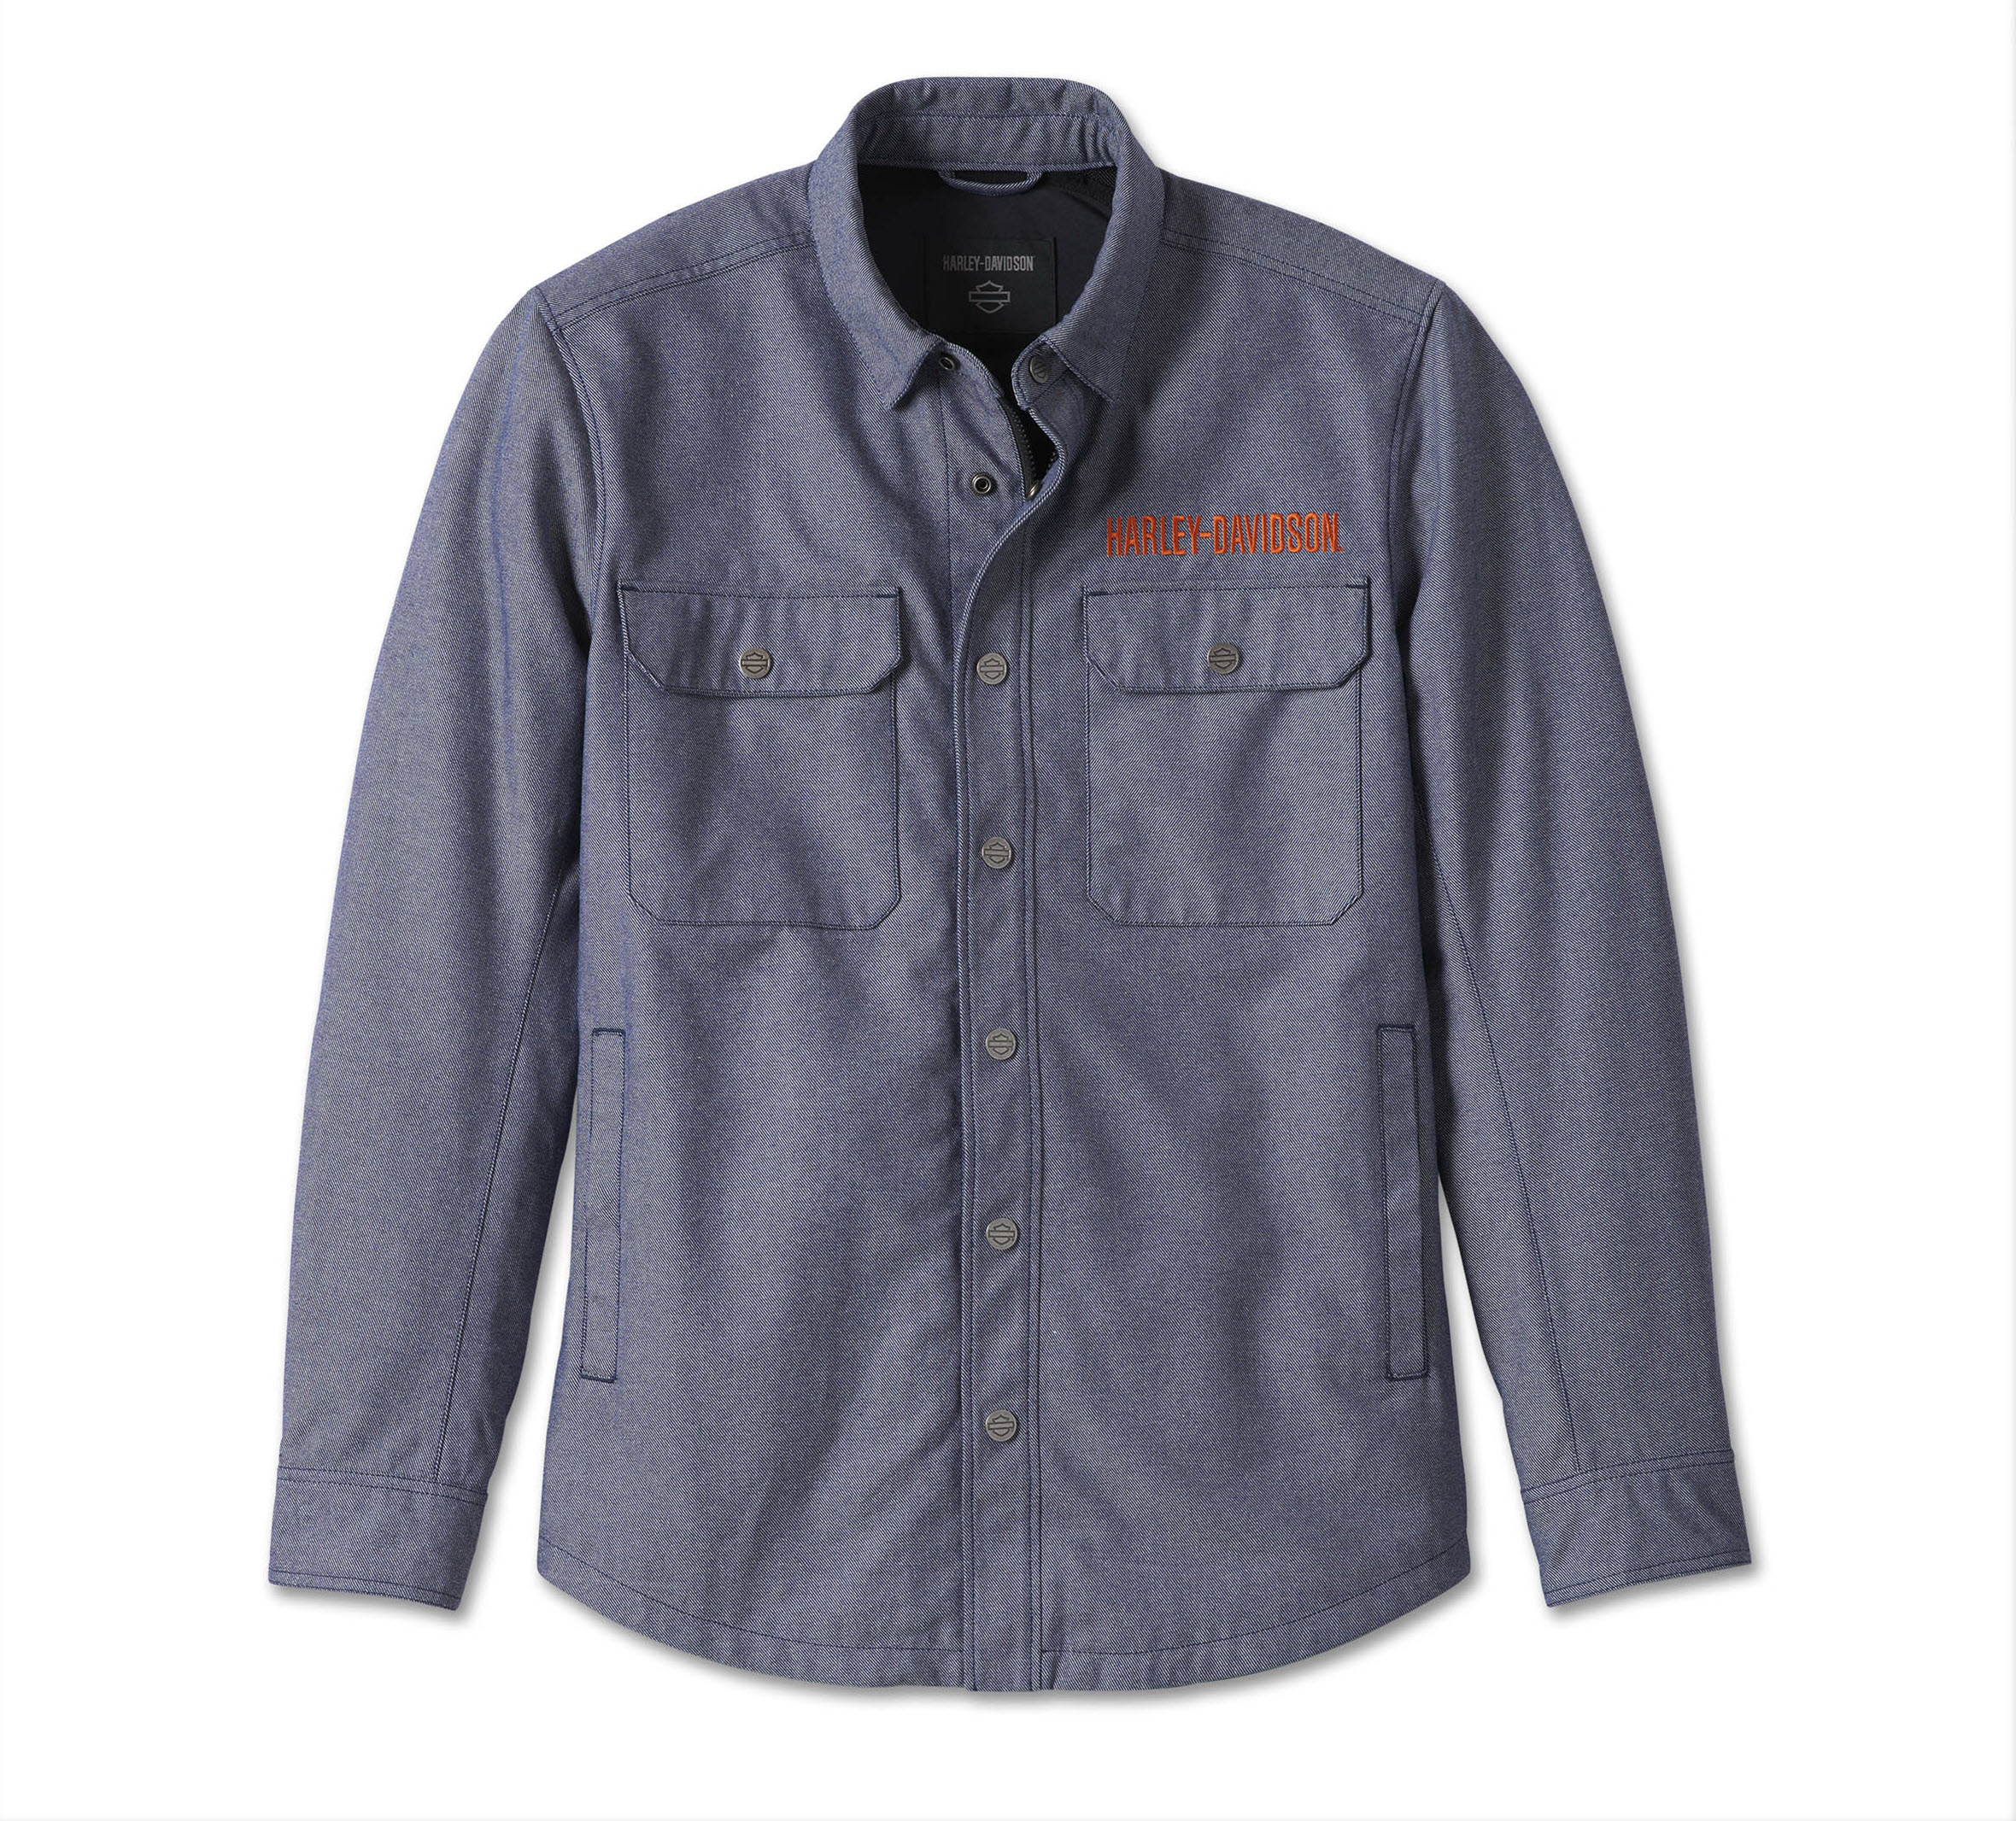 Harley-Davidson® Men's Hi-Visibility Reflective Vest - 98158-18EM